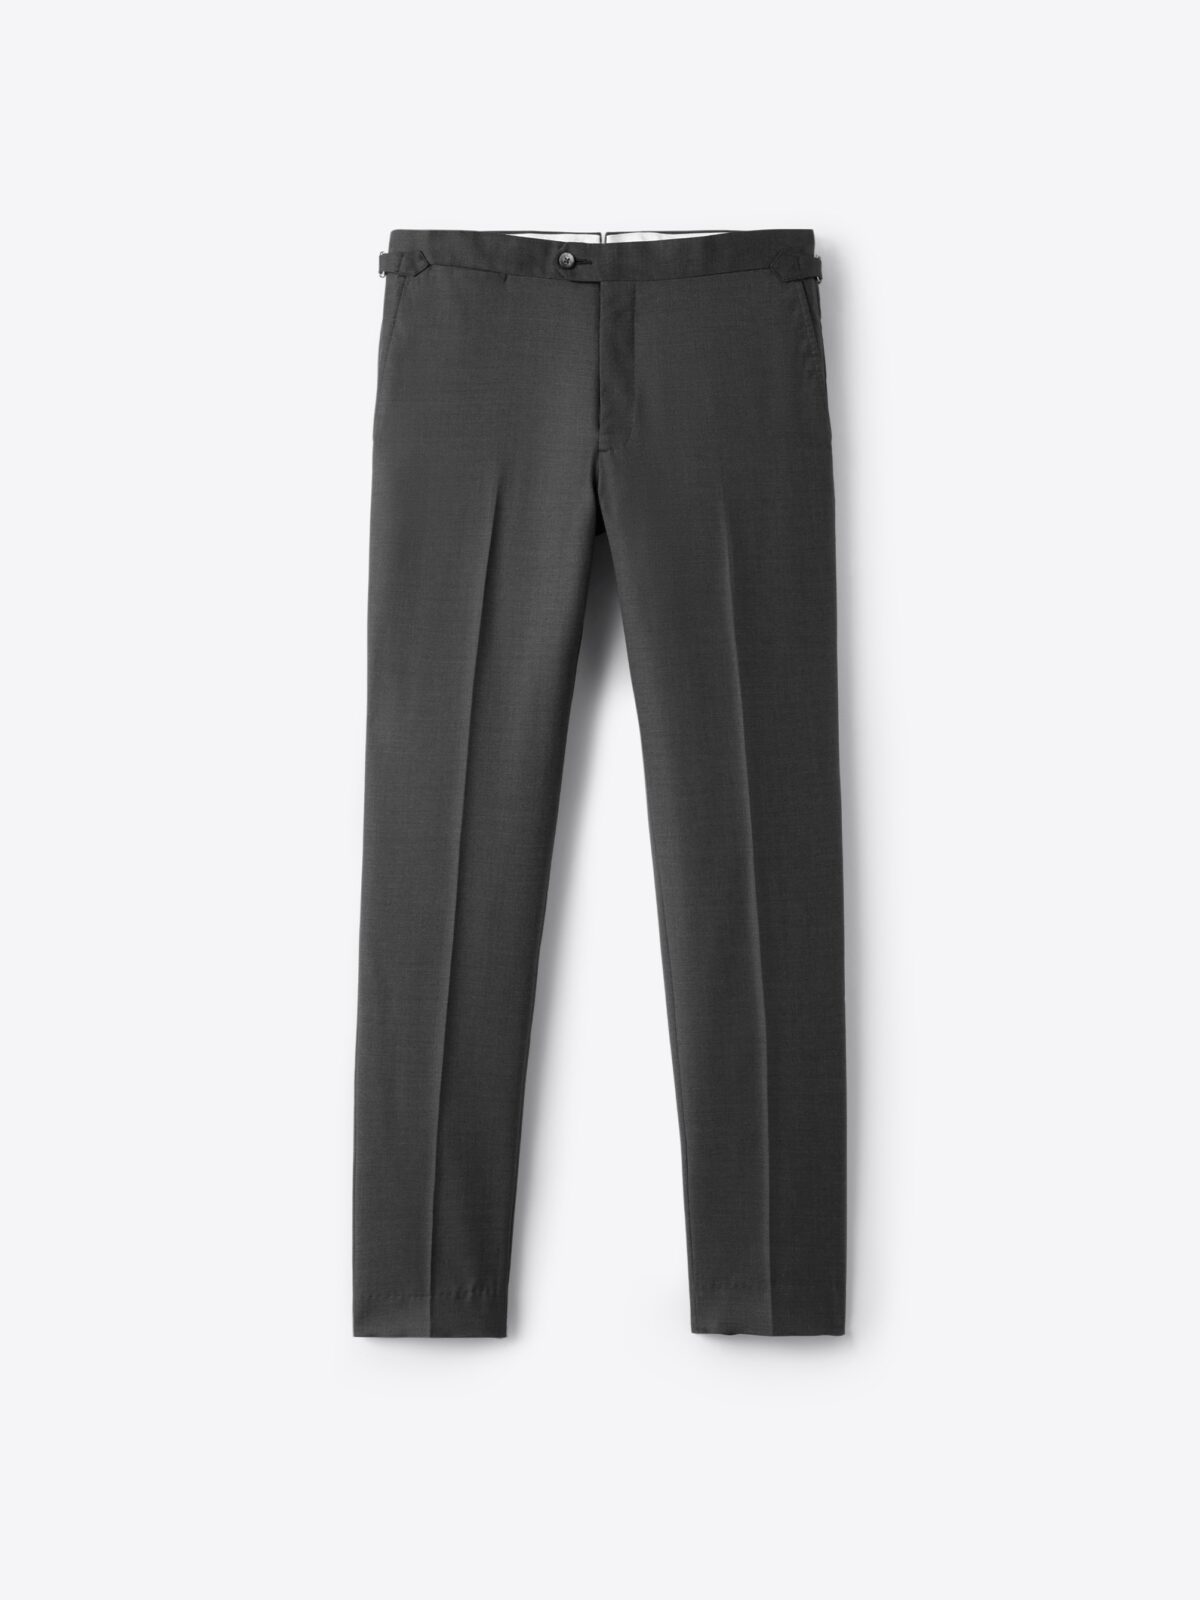 Men's Pinstripe Tailored Trousers | Wool | Black | Percival Menswear